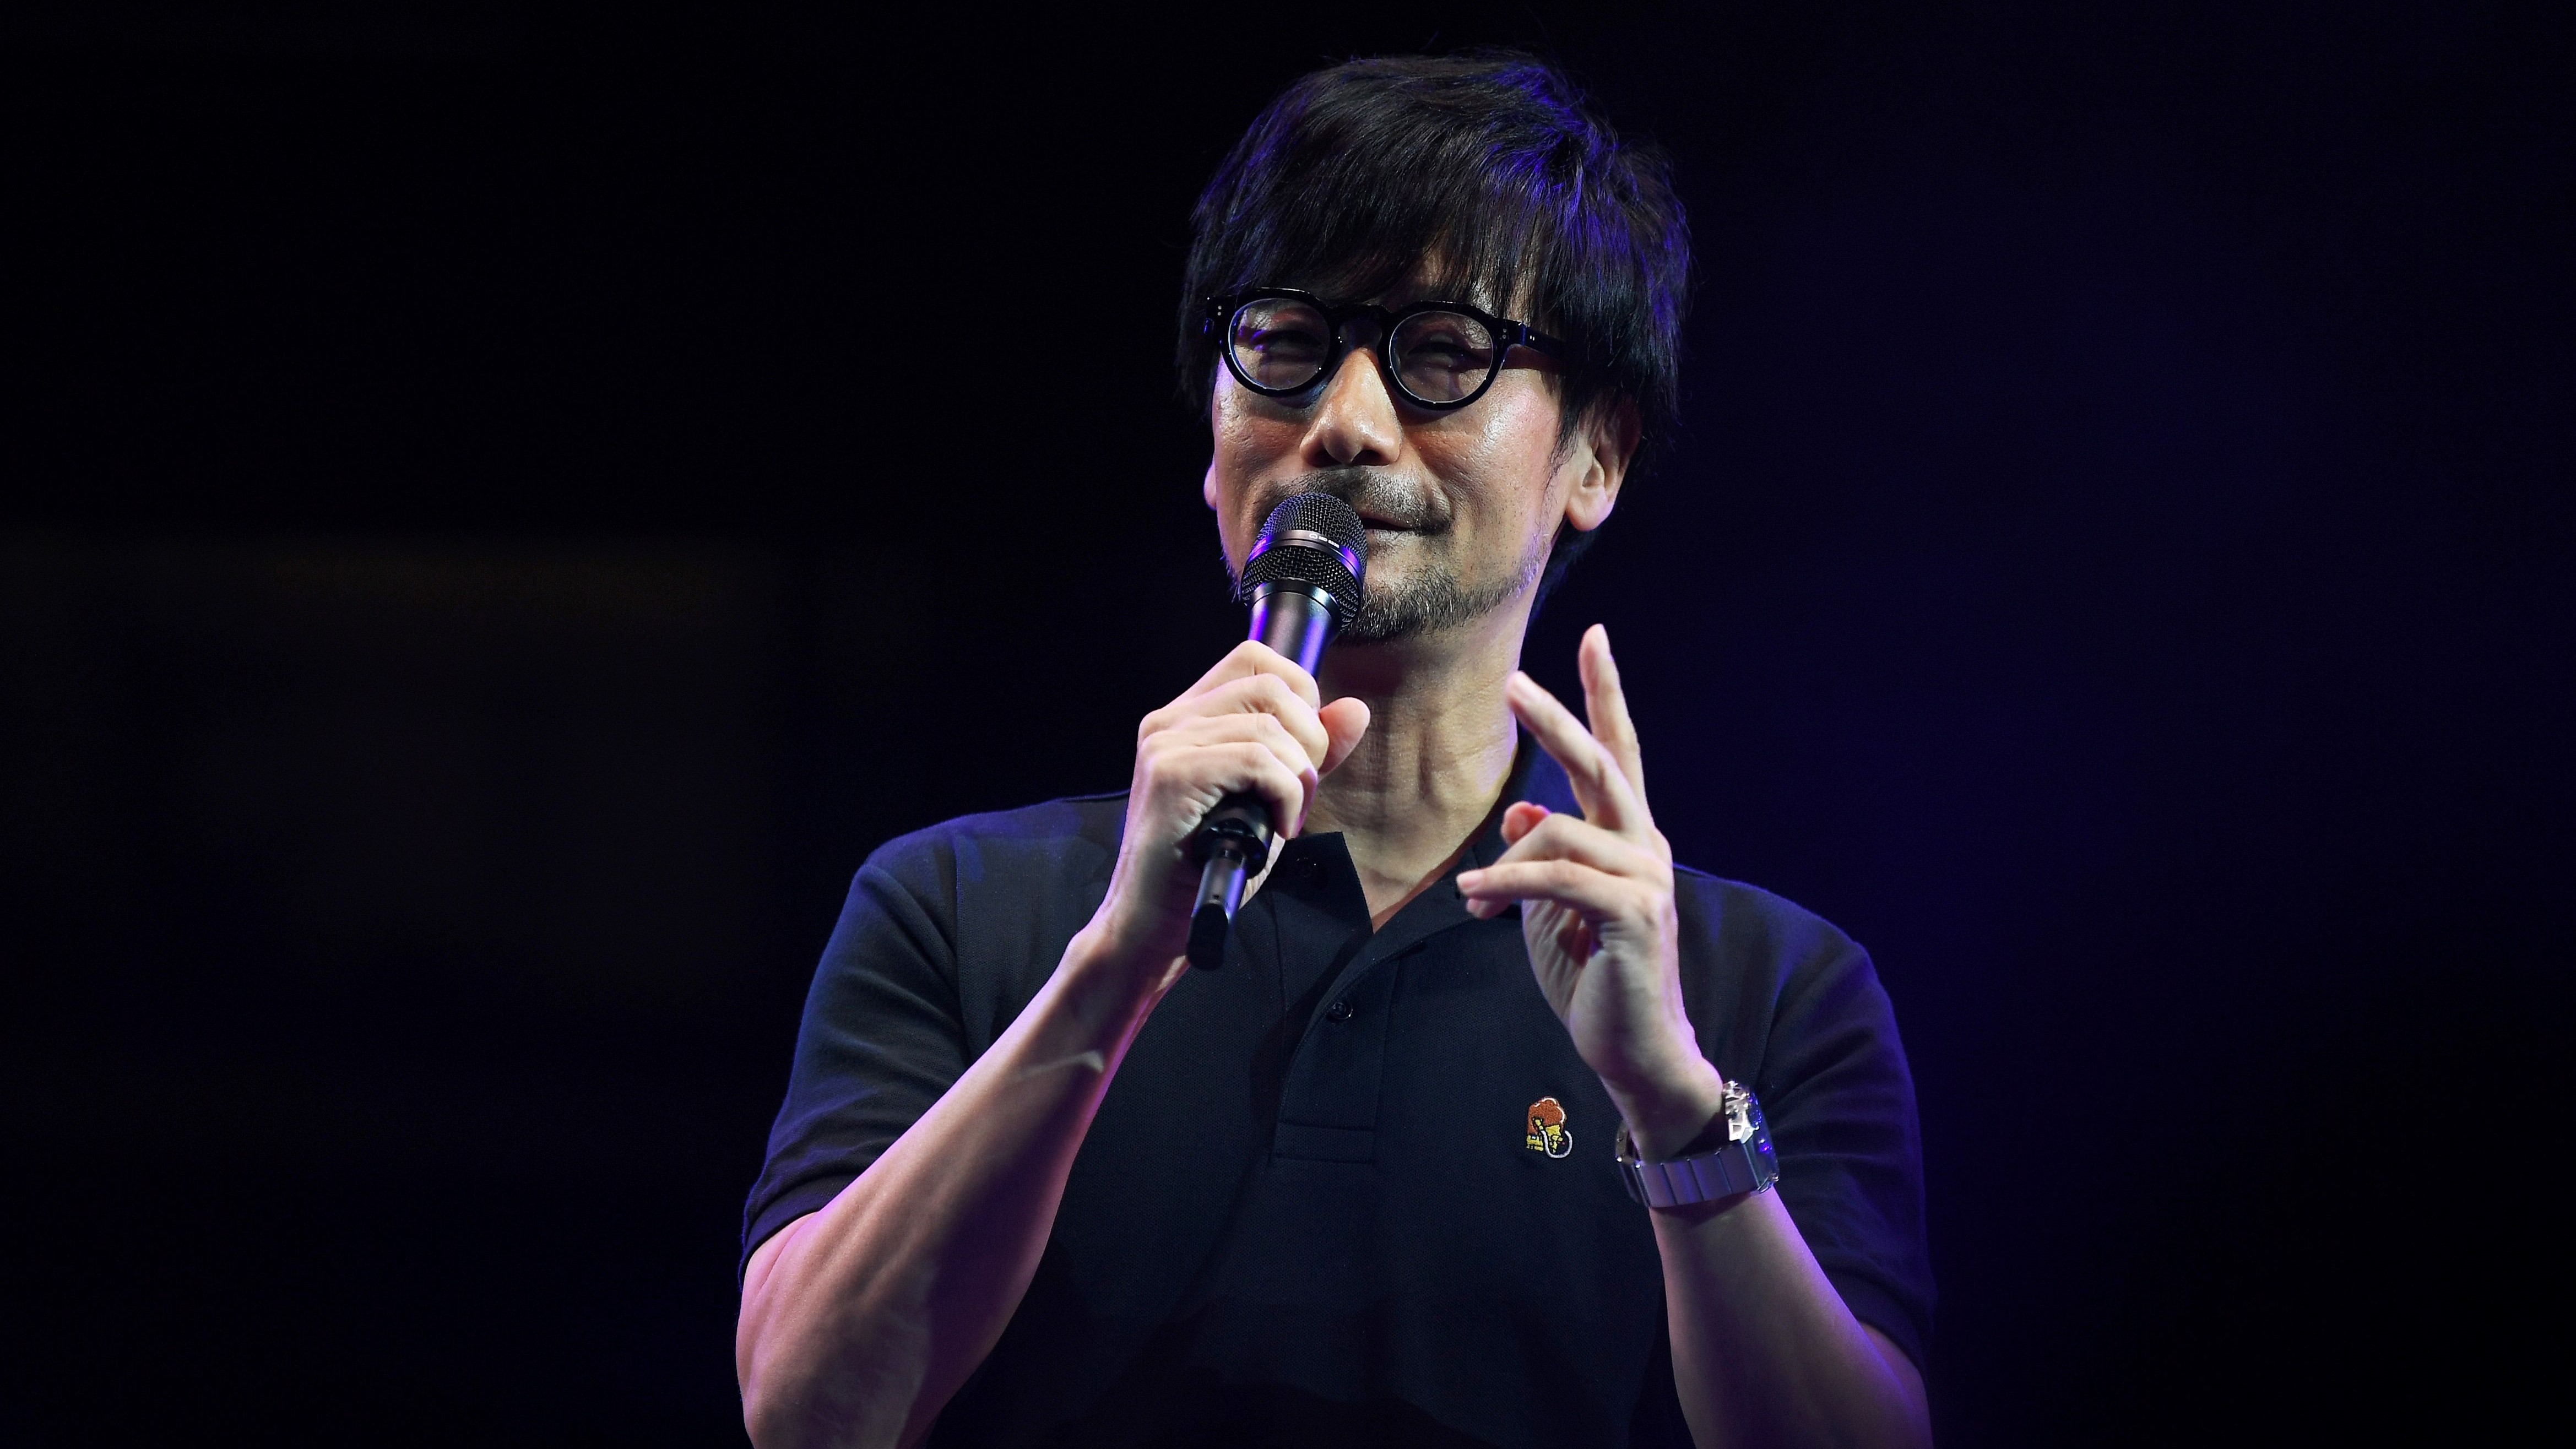 Хидео Кодзима совместно с Sony работает над новой шпионской игрой, которая, как он надеется, «преодолеет барьеры между кино и видеоиграми».